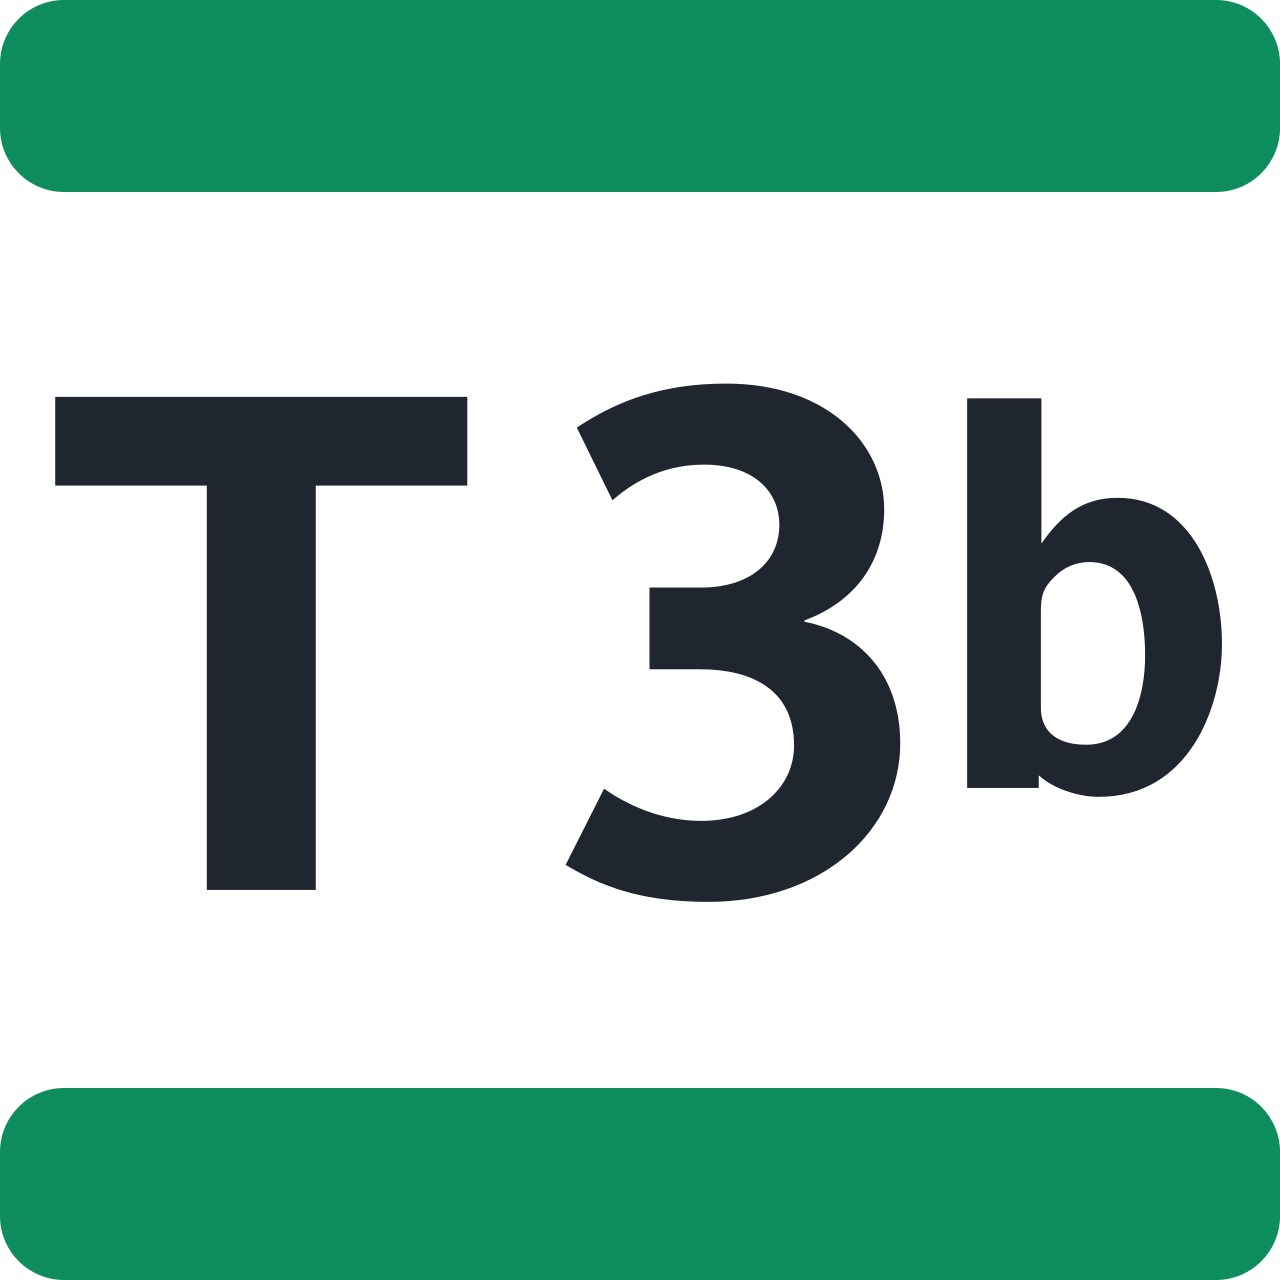 Ligne T3b